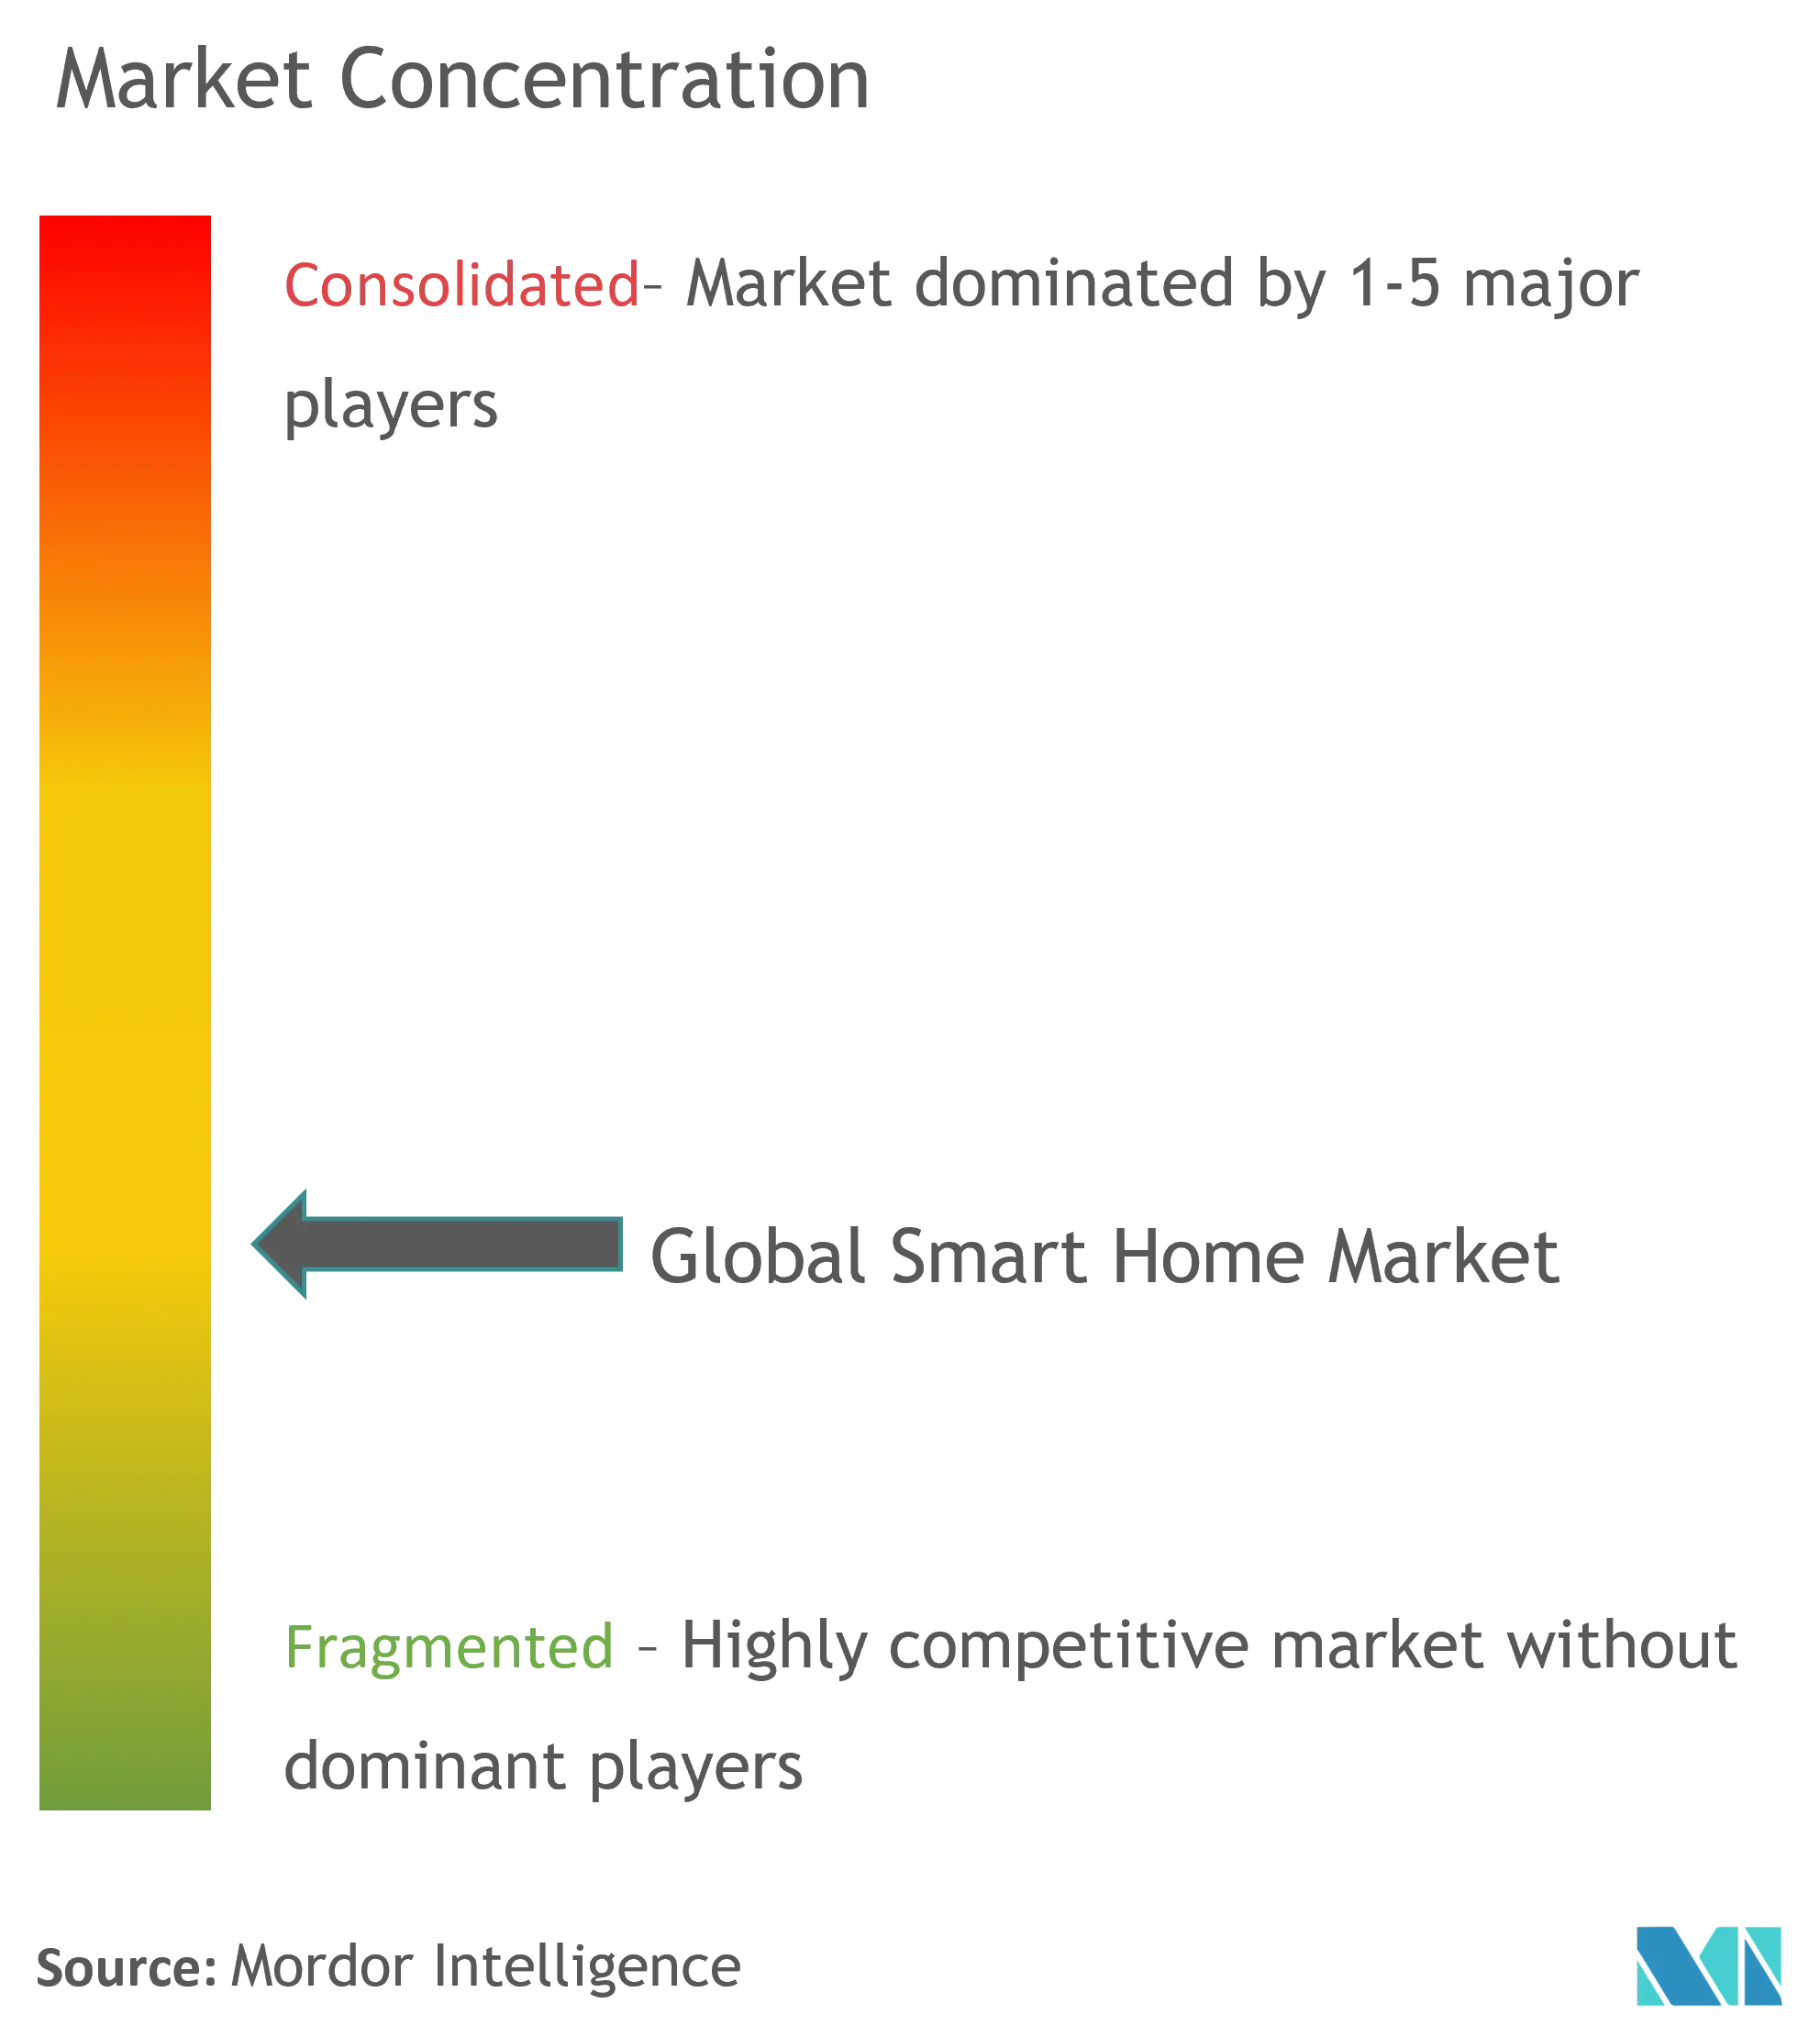 Smart Homes Market Concentration